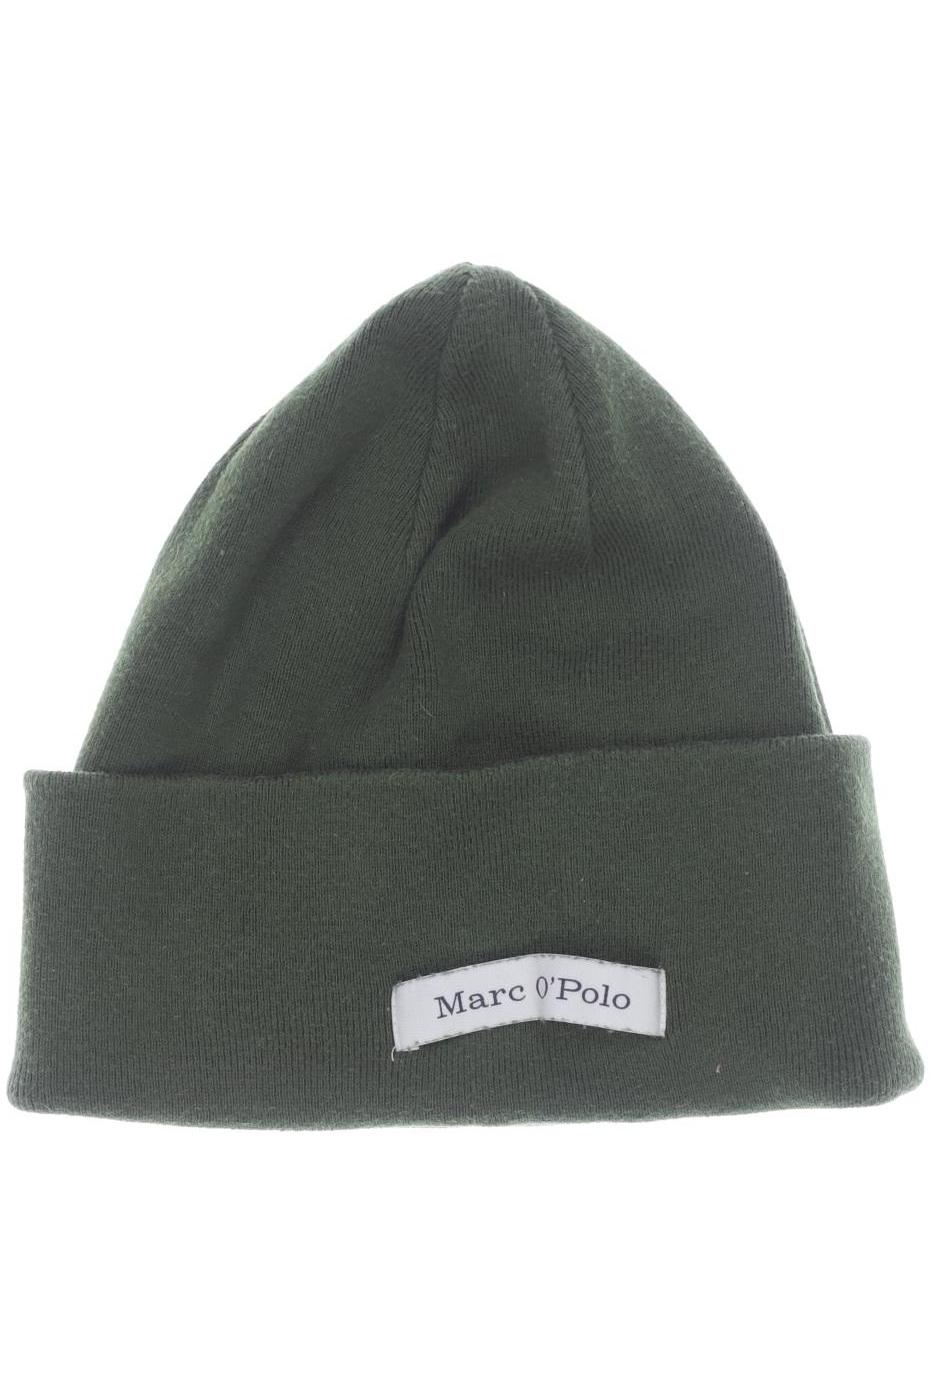 Marc O Polo Damen Hut/Mütze, grün von Marc O Polo